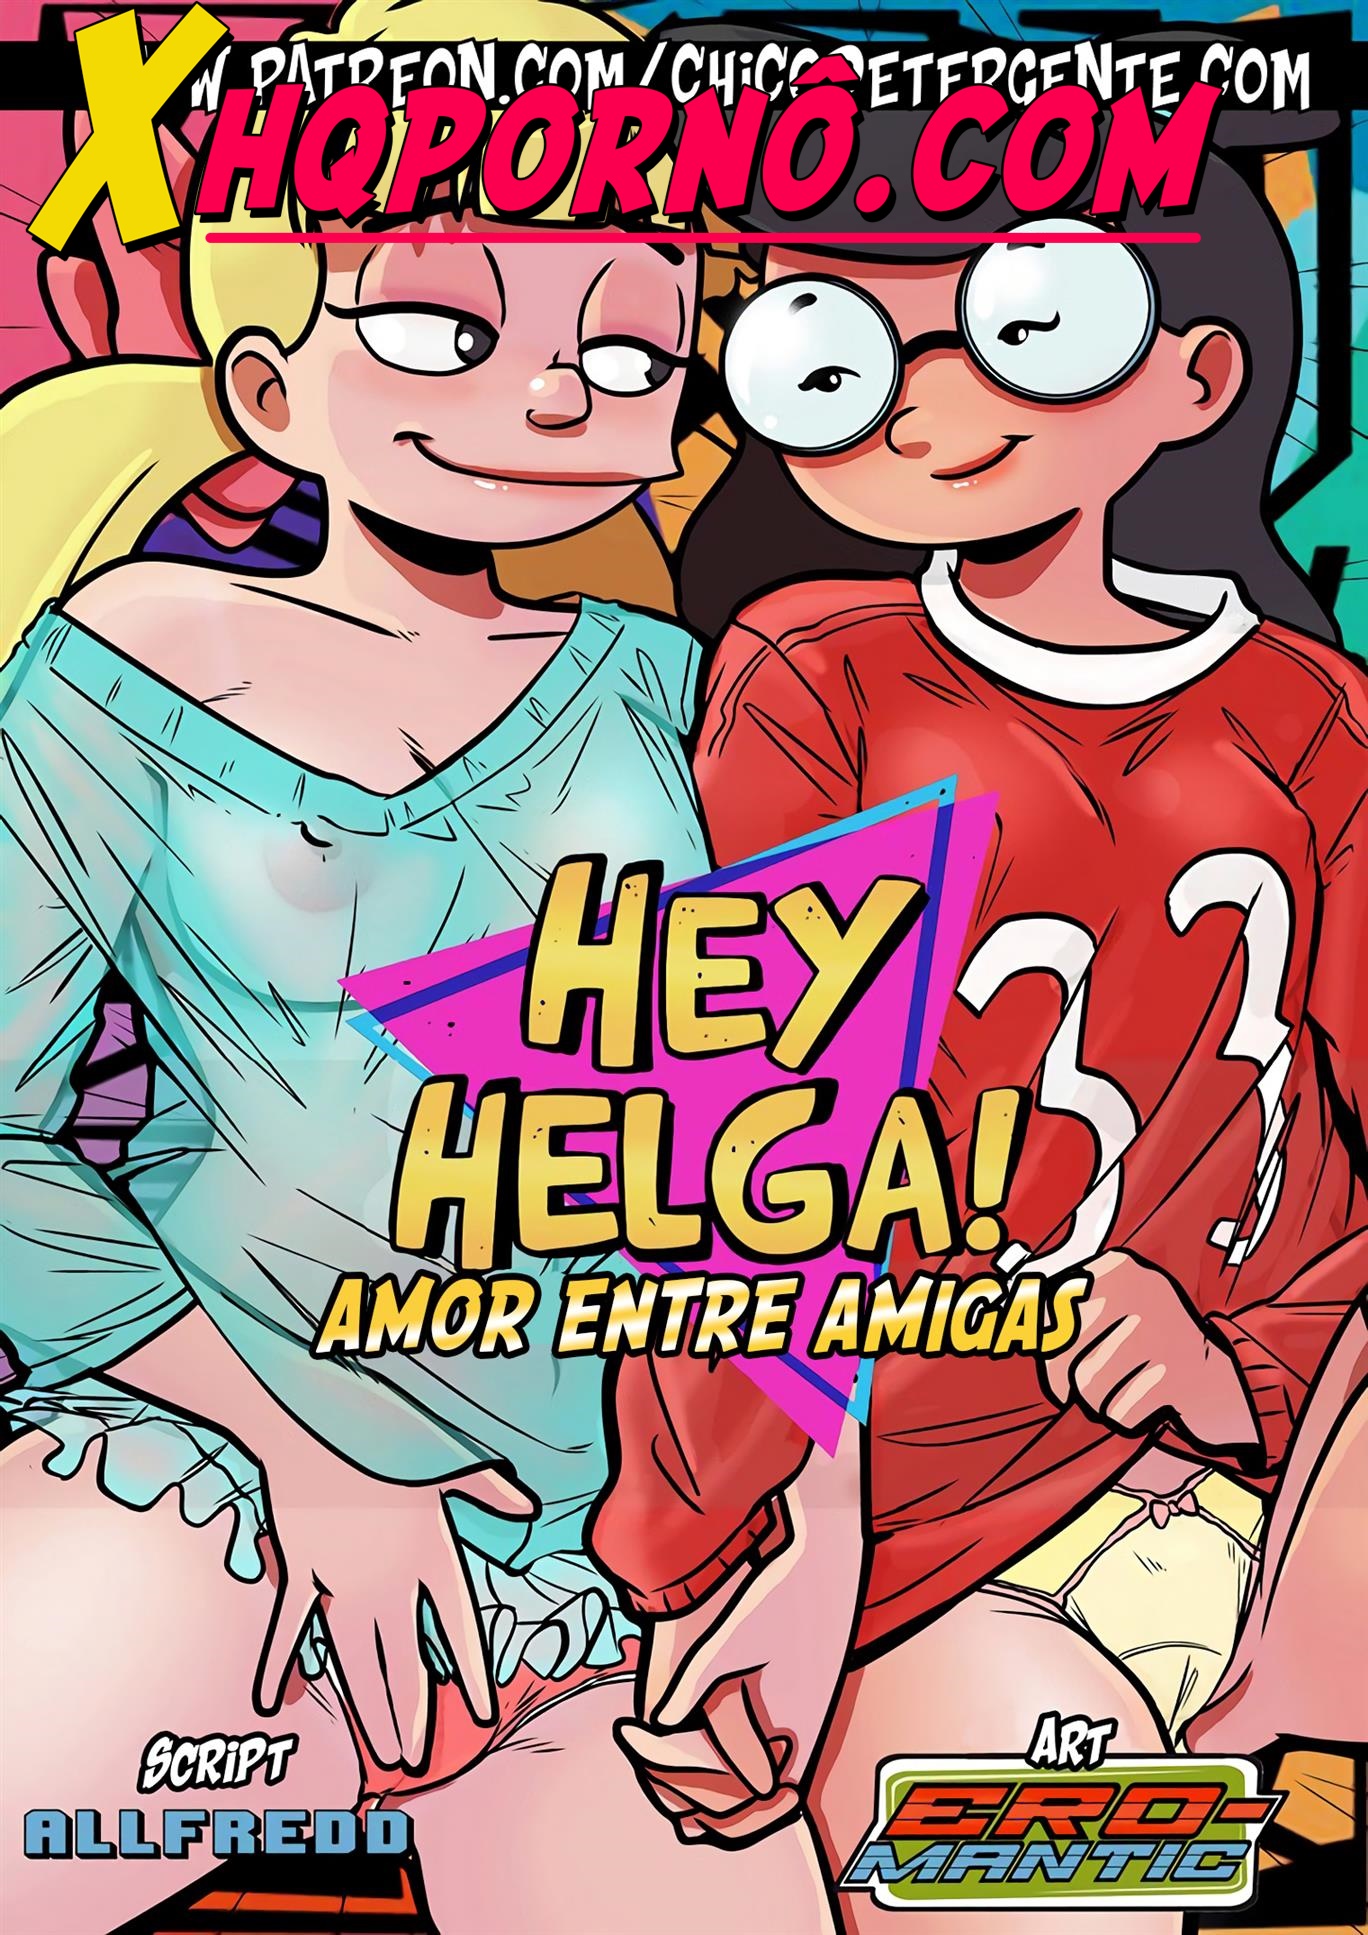 Hey Helga!